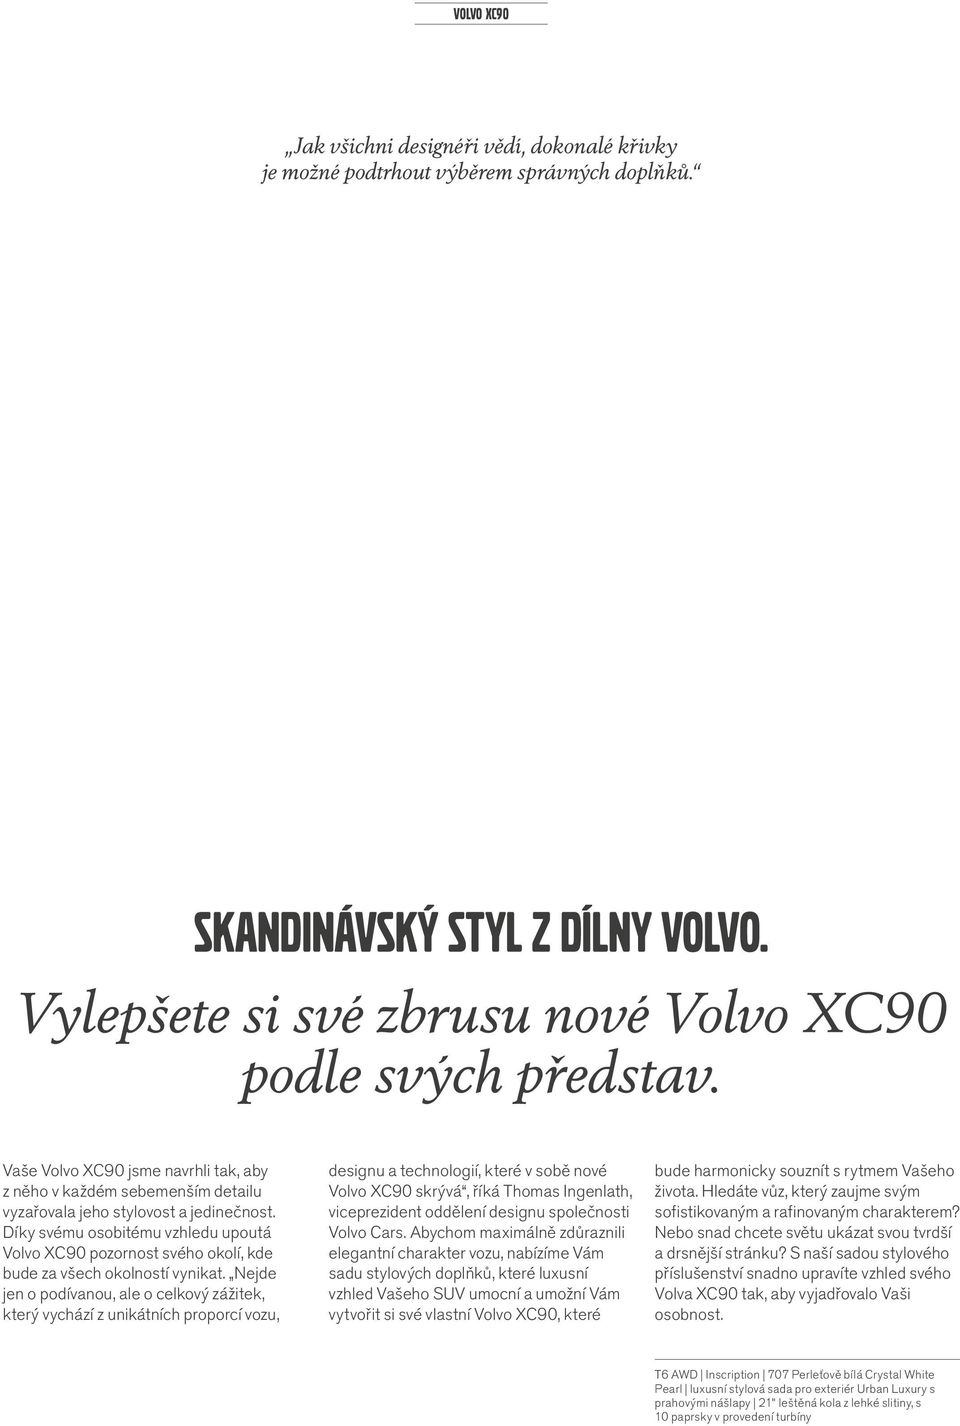 Díky svému osobitému vzhledu upoutá Volvo XC90 pozornost svého okolí, kde bude za všech okolností vynikat.